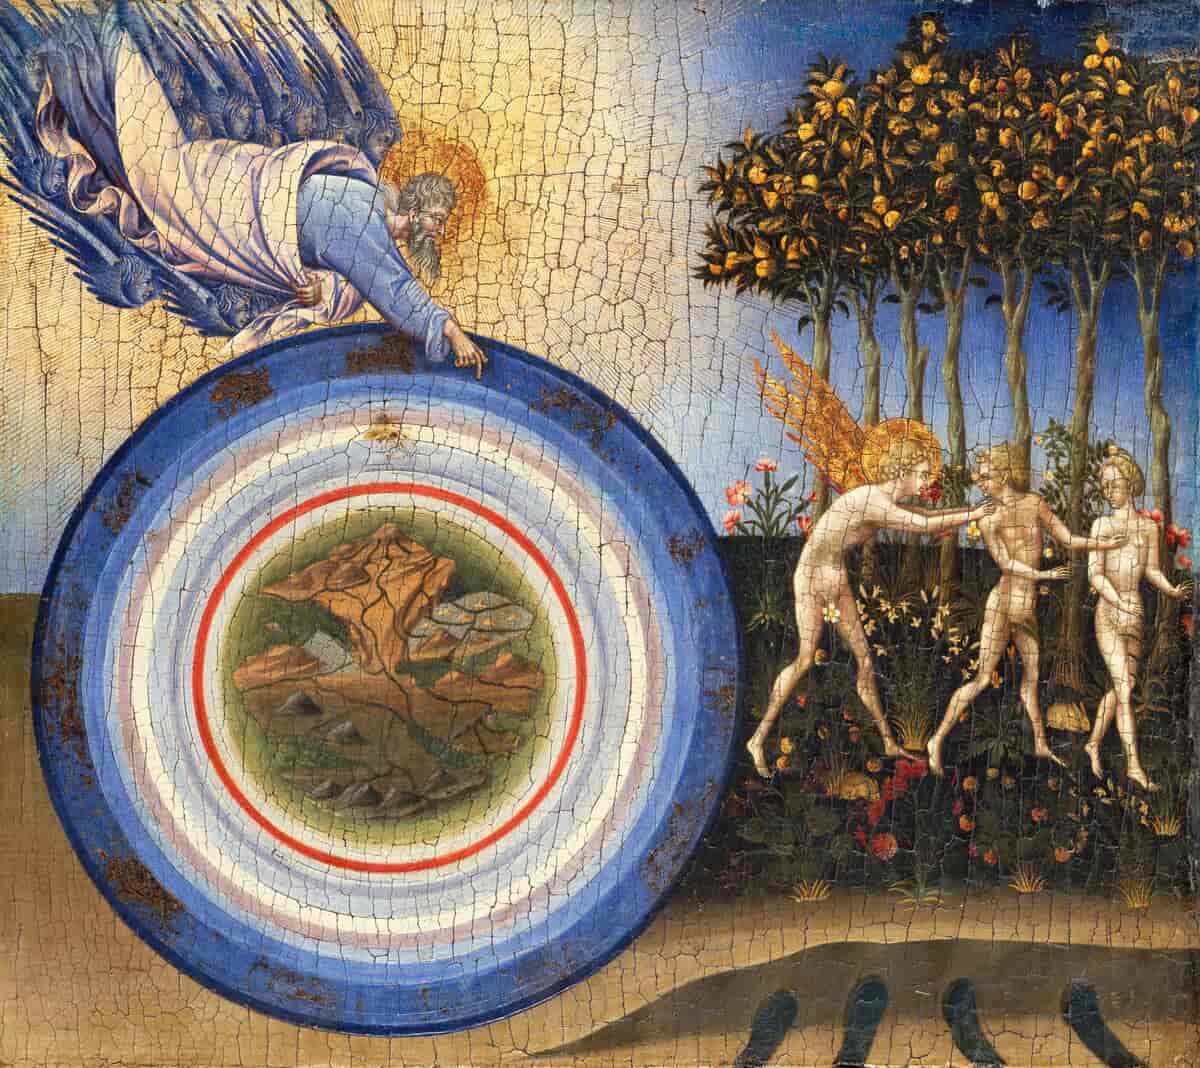 Verdens skabelse og uddrivelsen fra paradis, 1445.